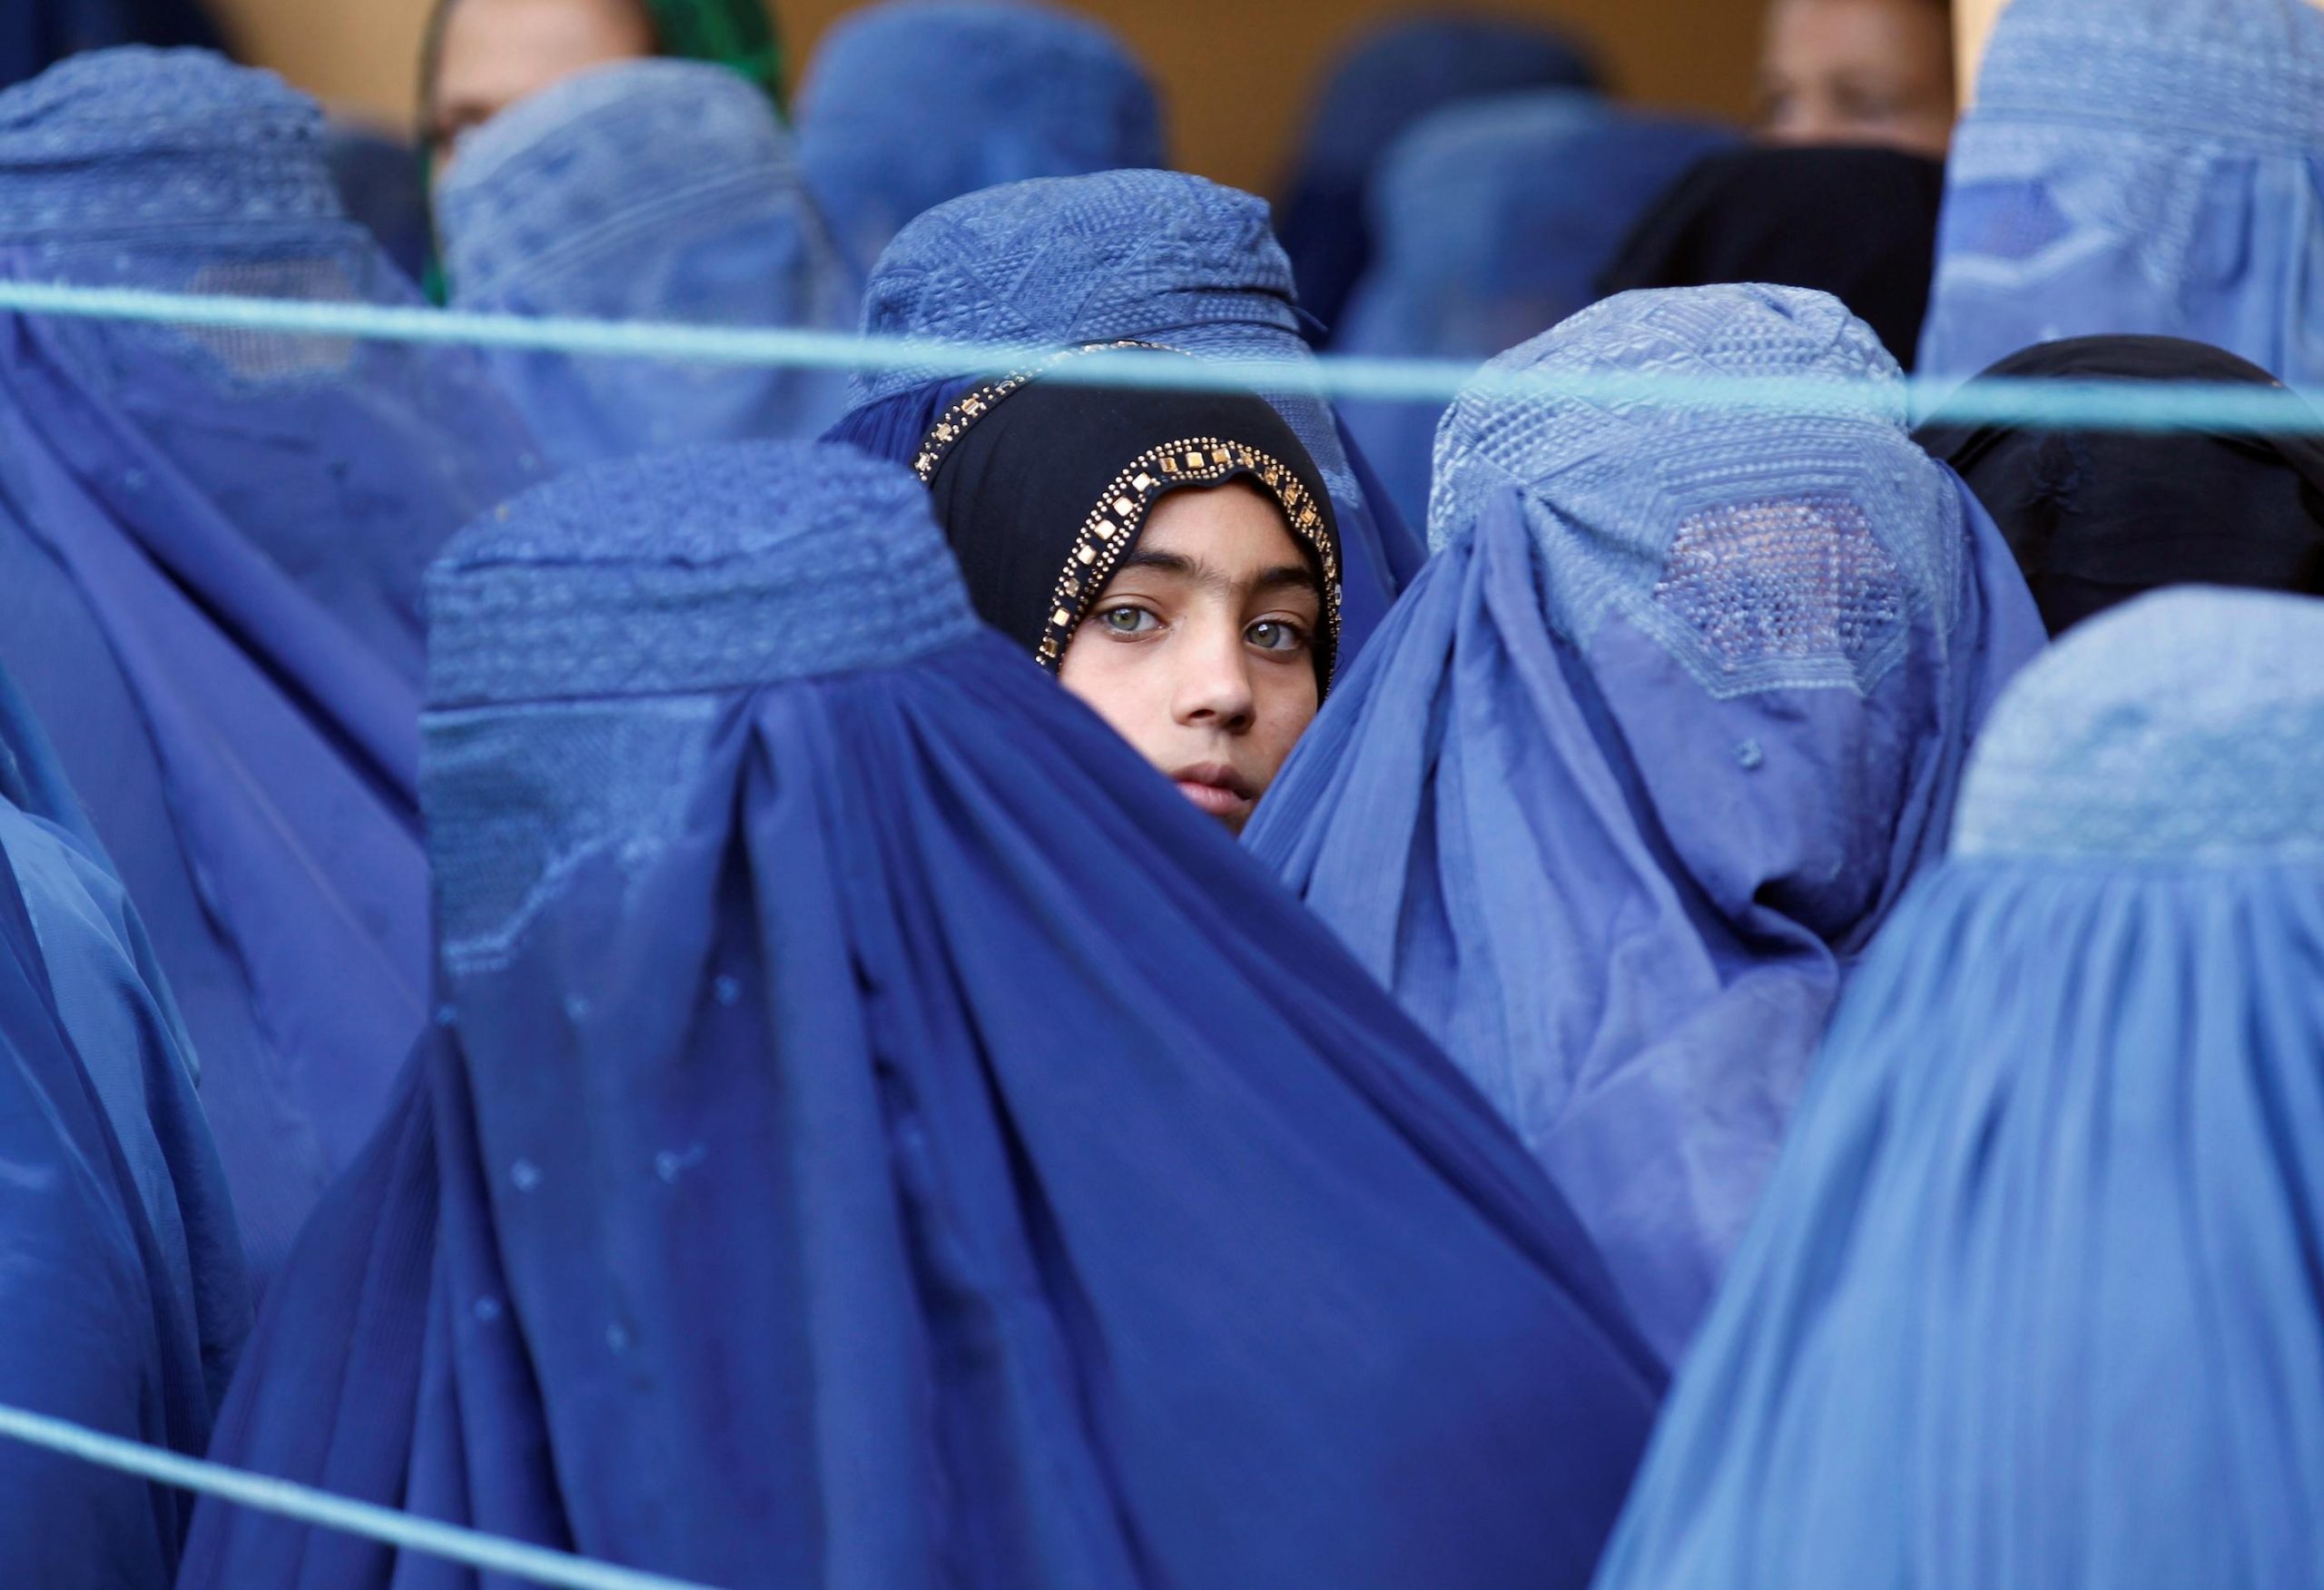 तालिबान ने कहा- विश्वविद्यालयों में लड़कियां पढ़ सकती हैं, लेकिन लड़कों से अलग